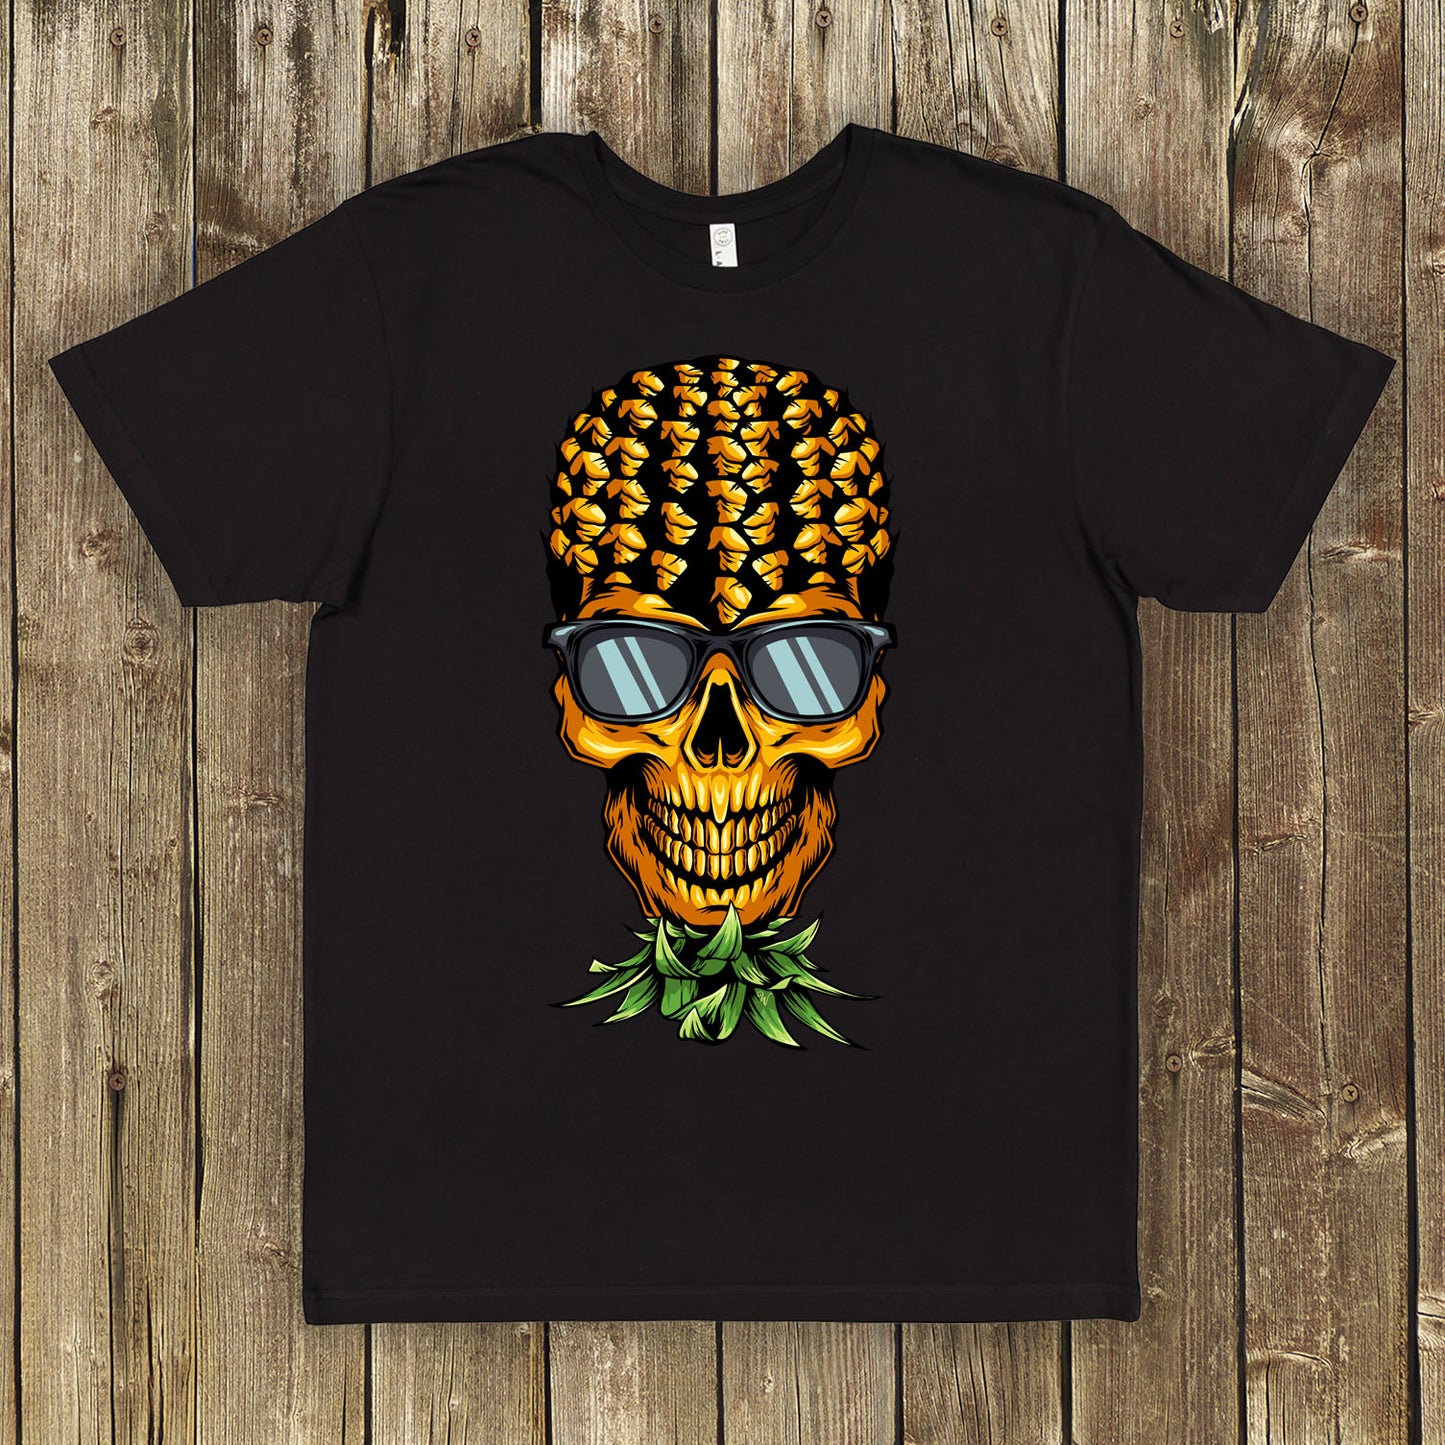 Upside-down Pineapple Skull Shirt